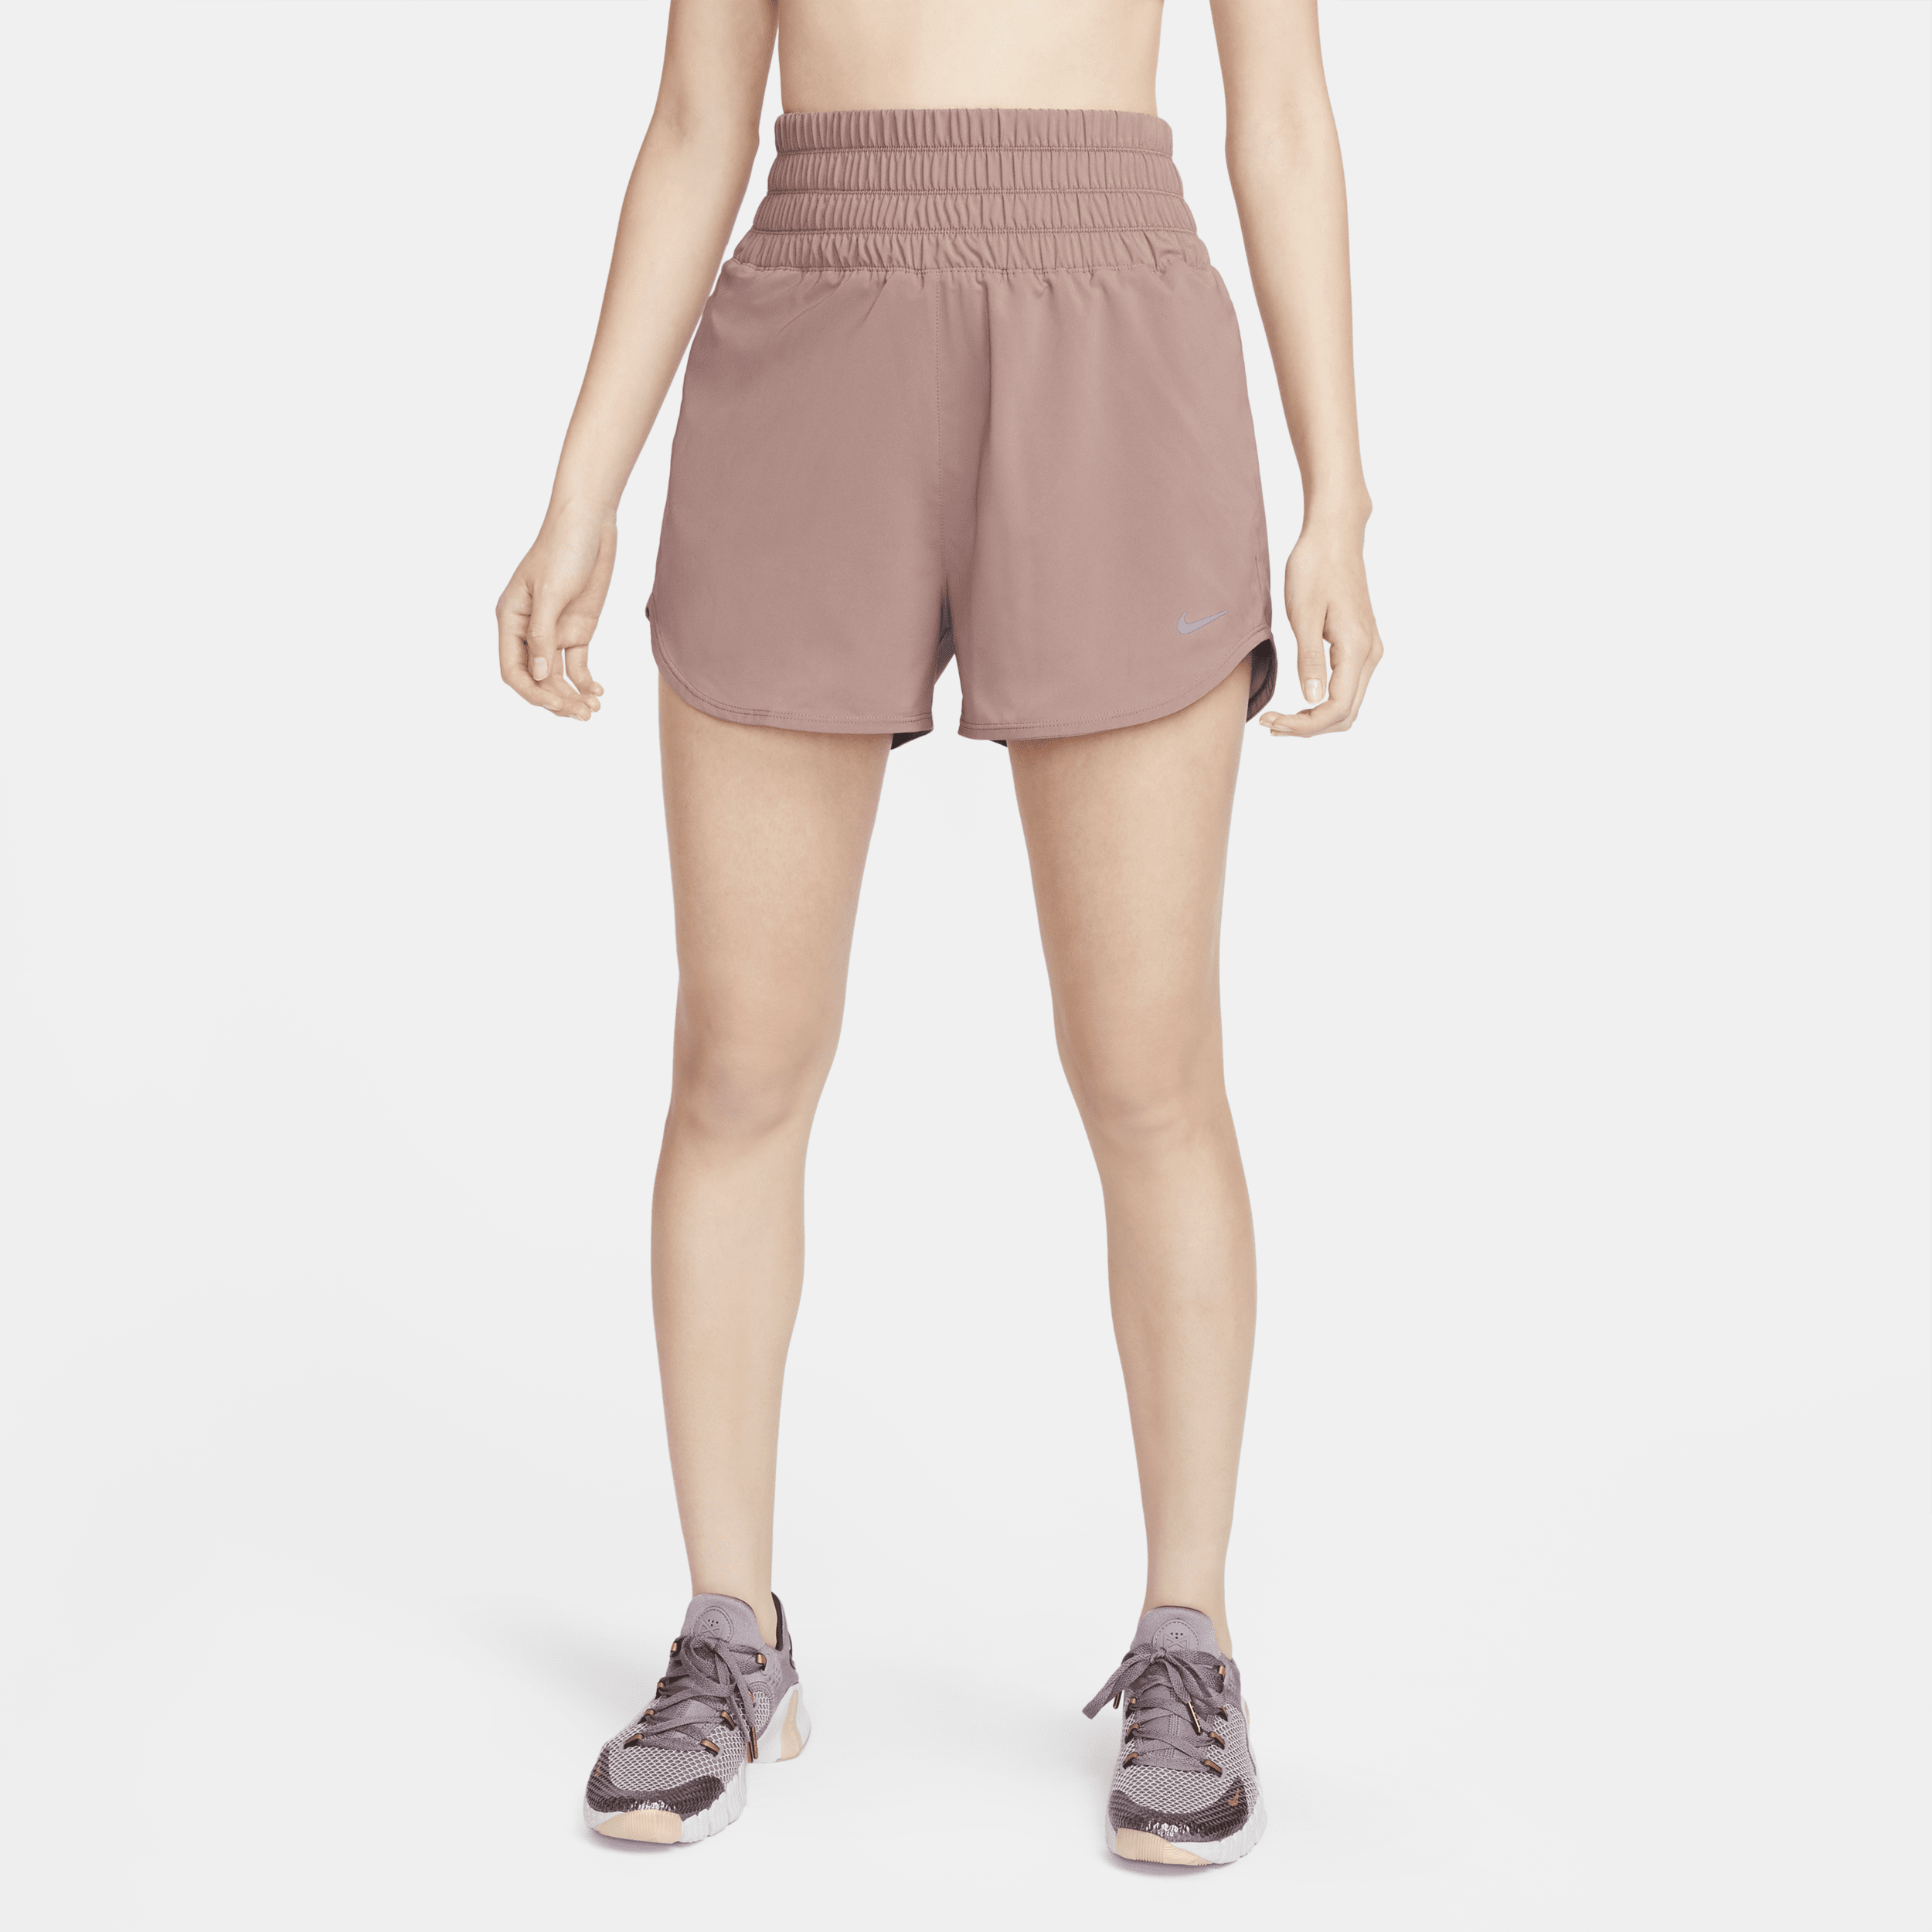 Nike One Dri-FIT damesshorts met ultrahoge taille en binnenbroekje (8 cm) - Paars